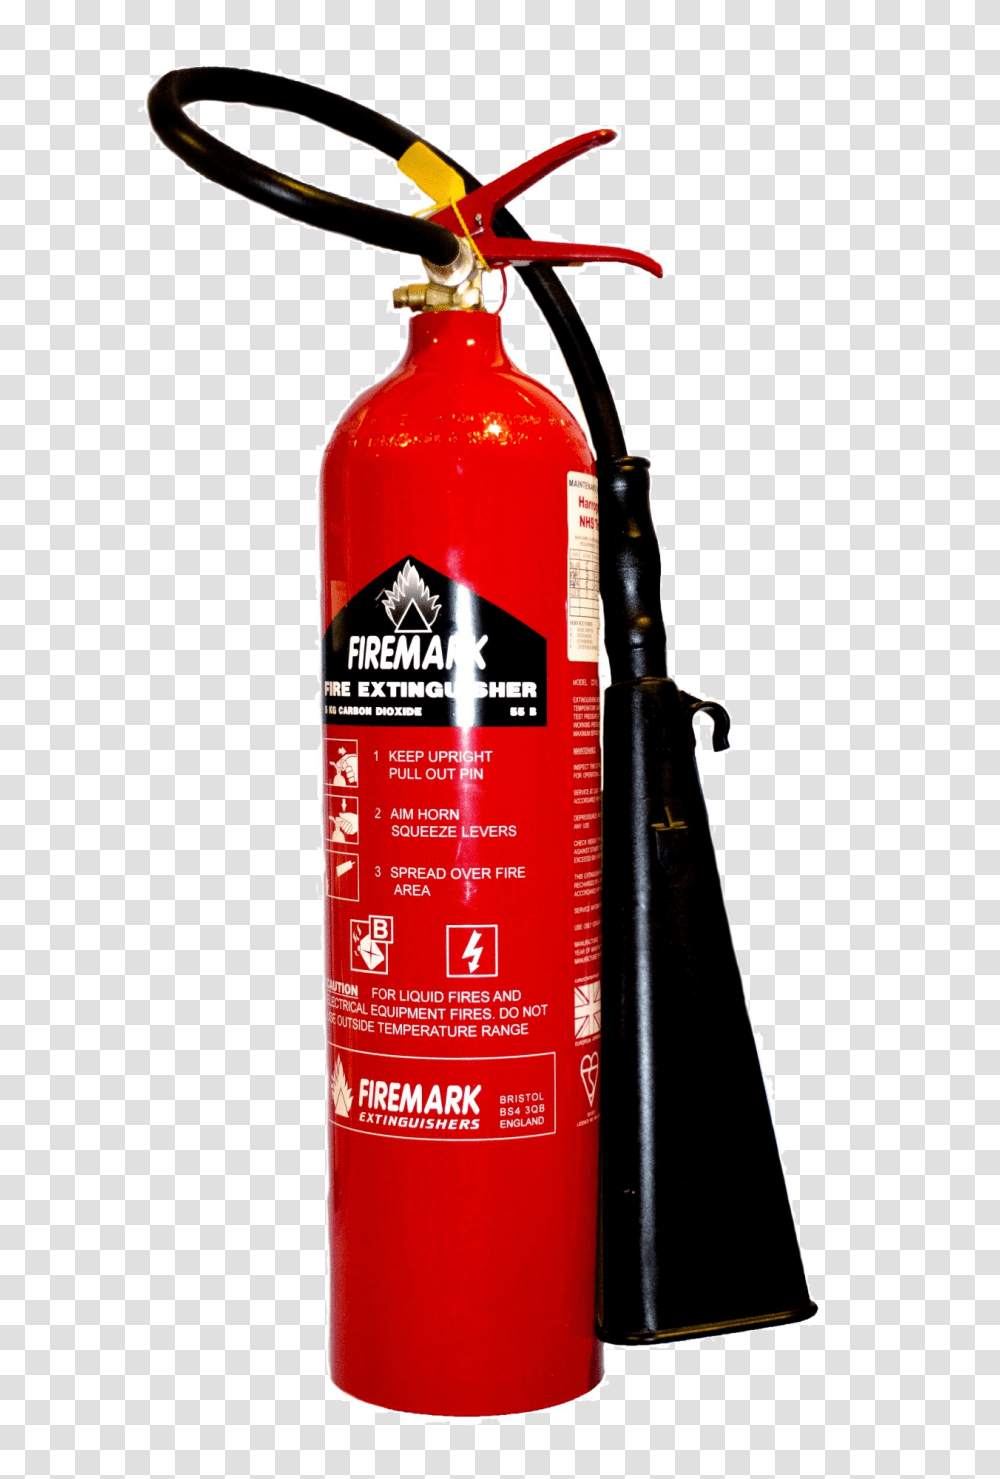 Fire Escape Fire Extinguisher Hd, Bottle, Dynamite, Weapon, Liquor Transparent Png